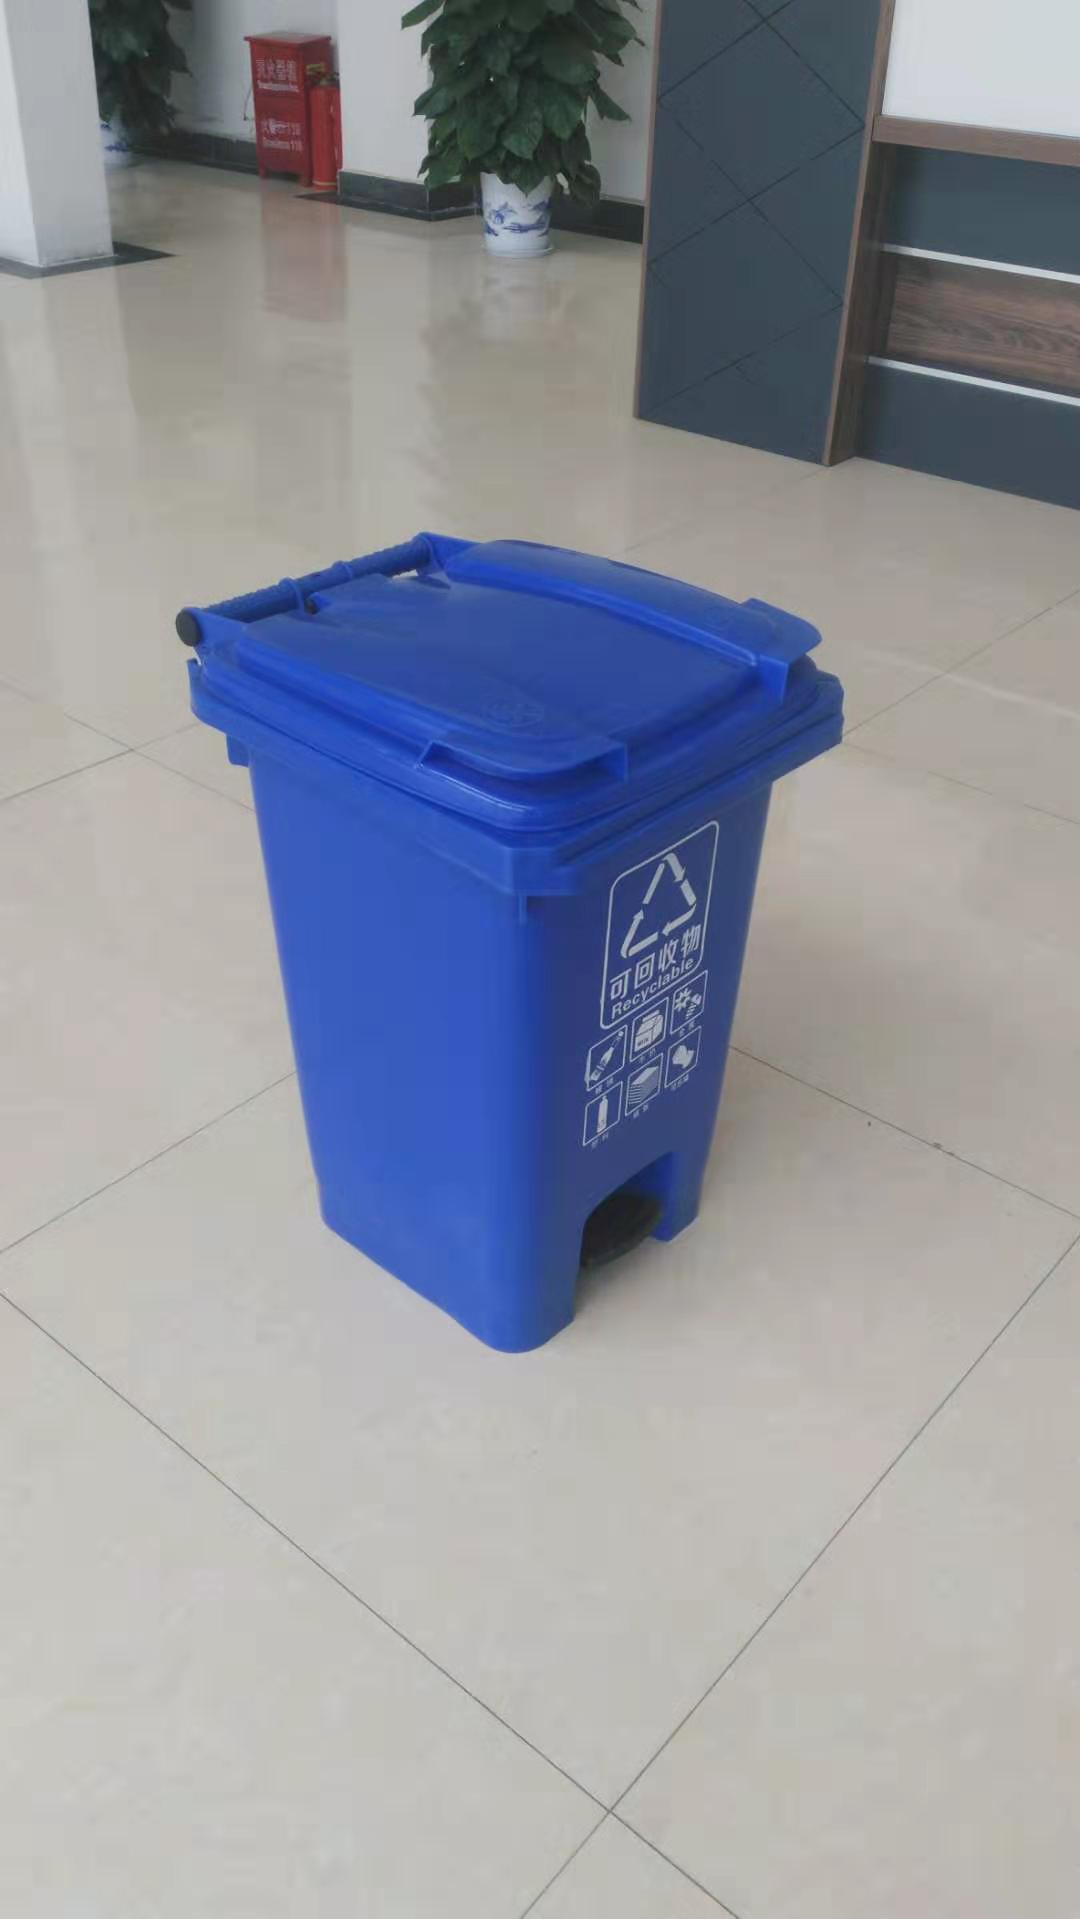 垃圾分类垃圾桶 垃圾桶图片 垃圾分类桶